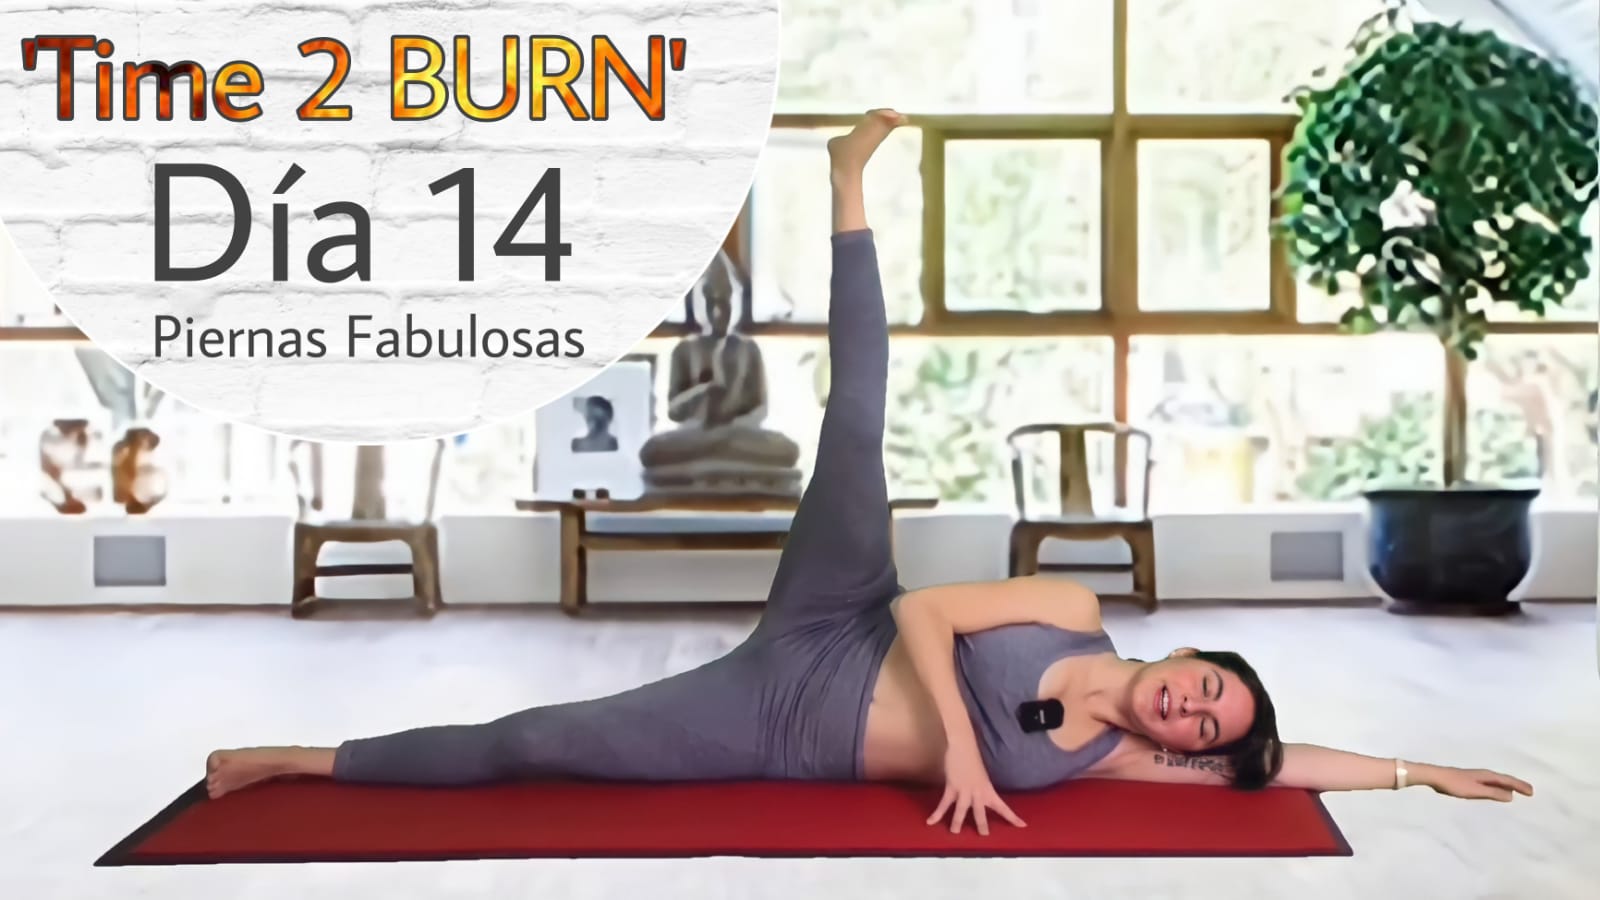 15 días de Yoga Para Perder Peso yoga con nathaly